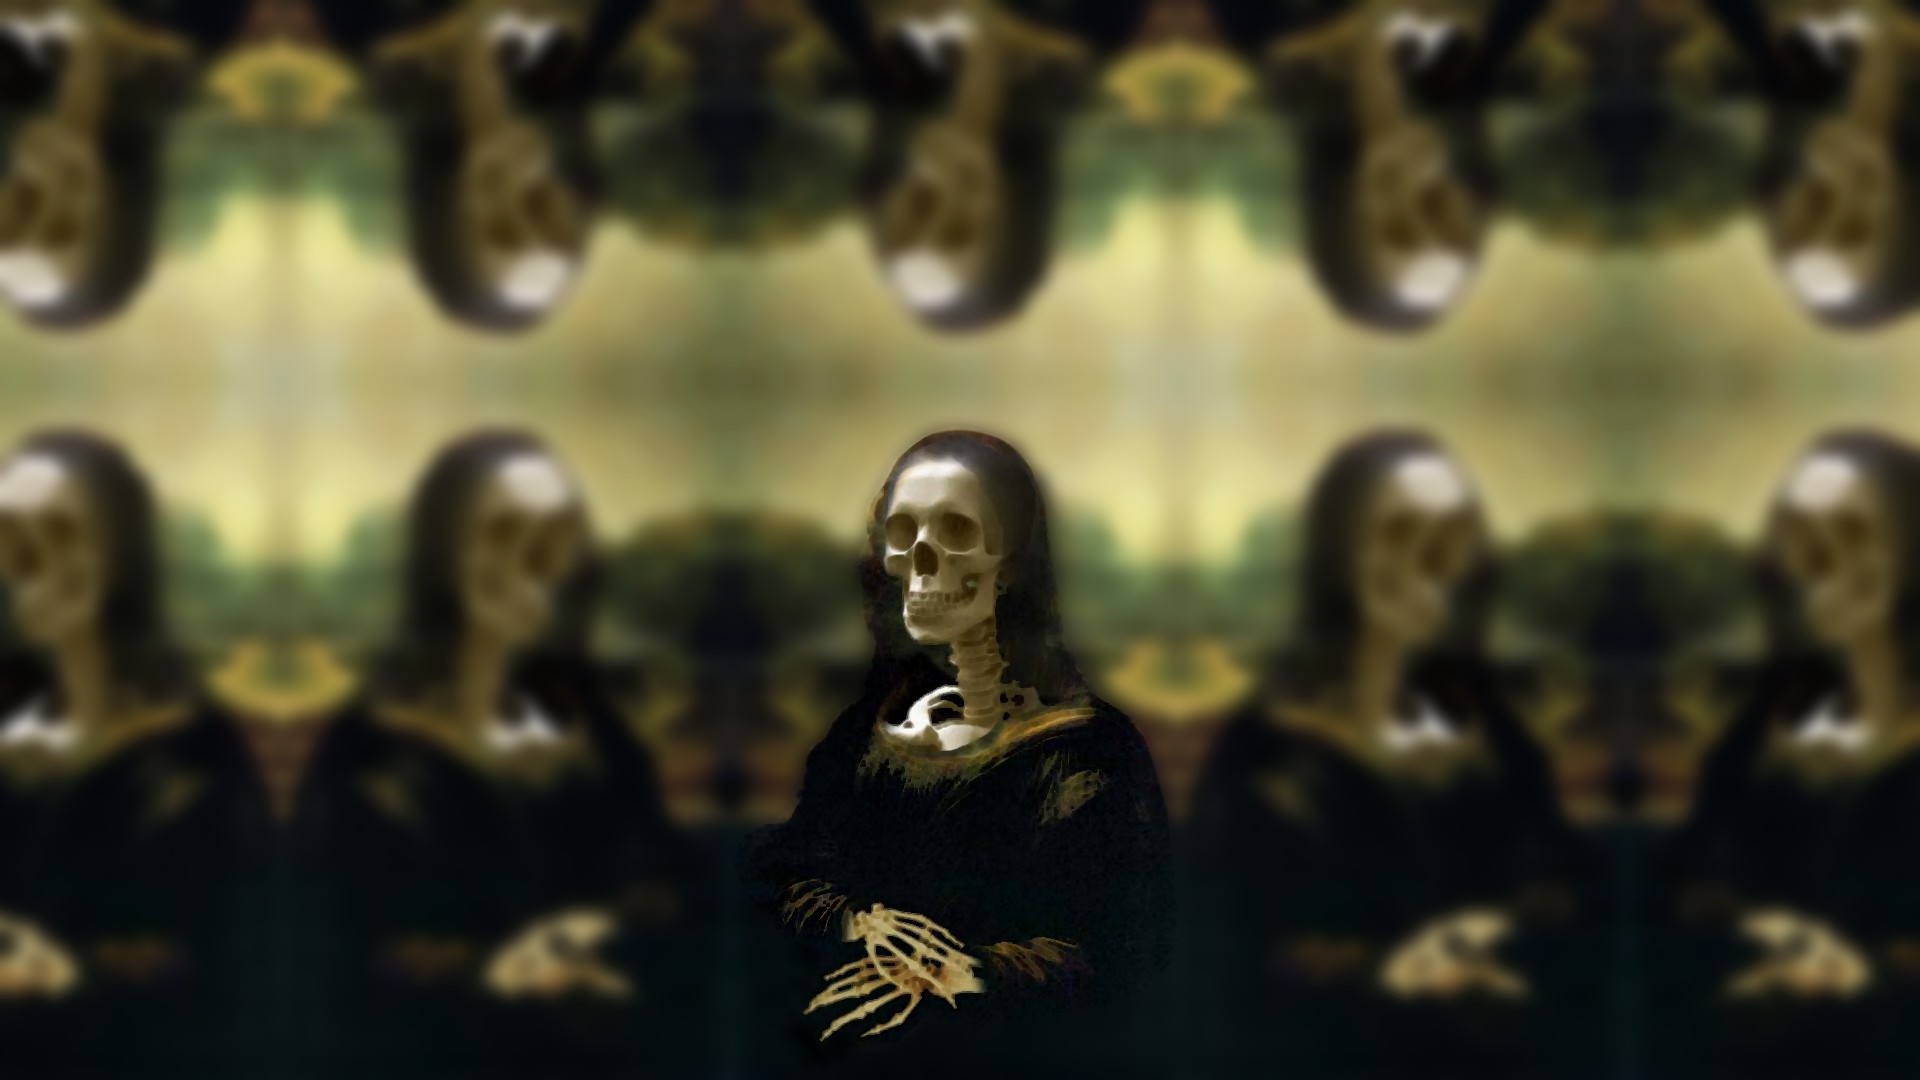 1920x1080 Skull Computer Wallpapers, Desktop Backgrounds  Id: 237080